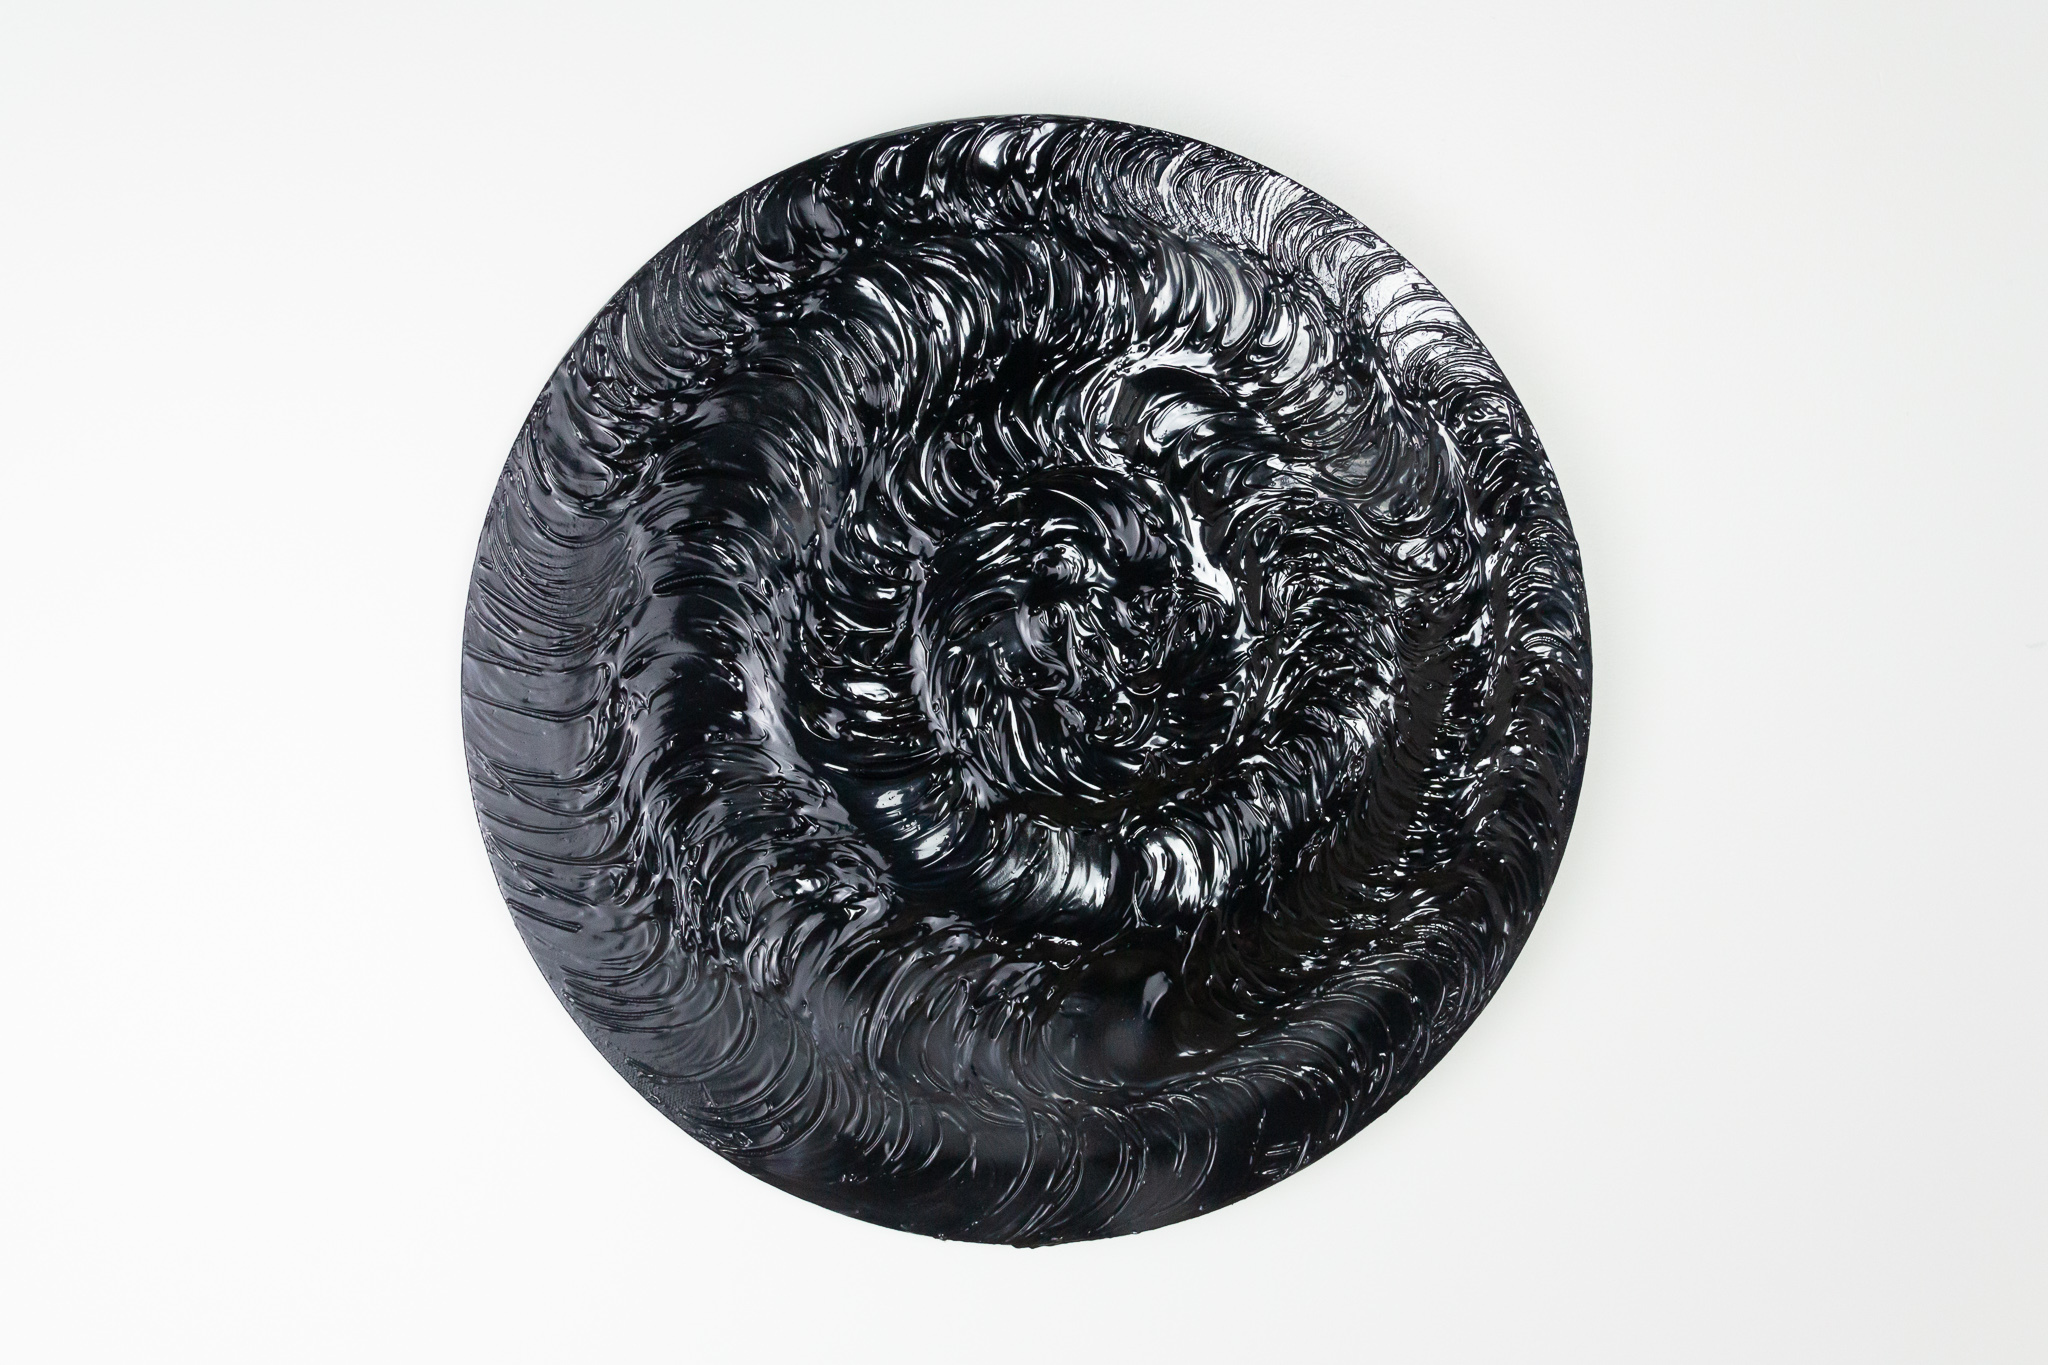 Ashanté Kindle, Untitled Crown, 2020, 12” diameter, acrylic on canvas